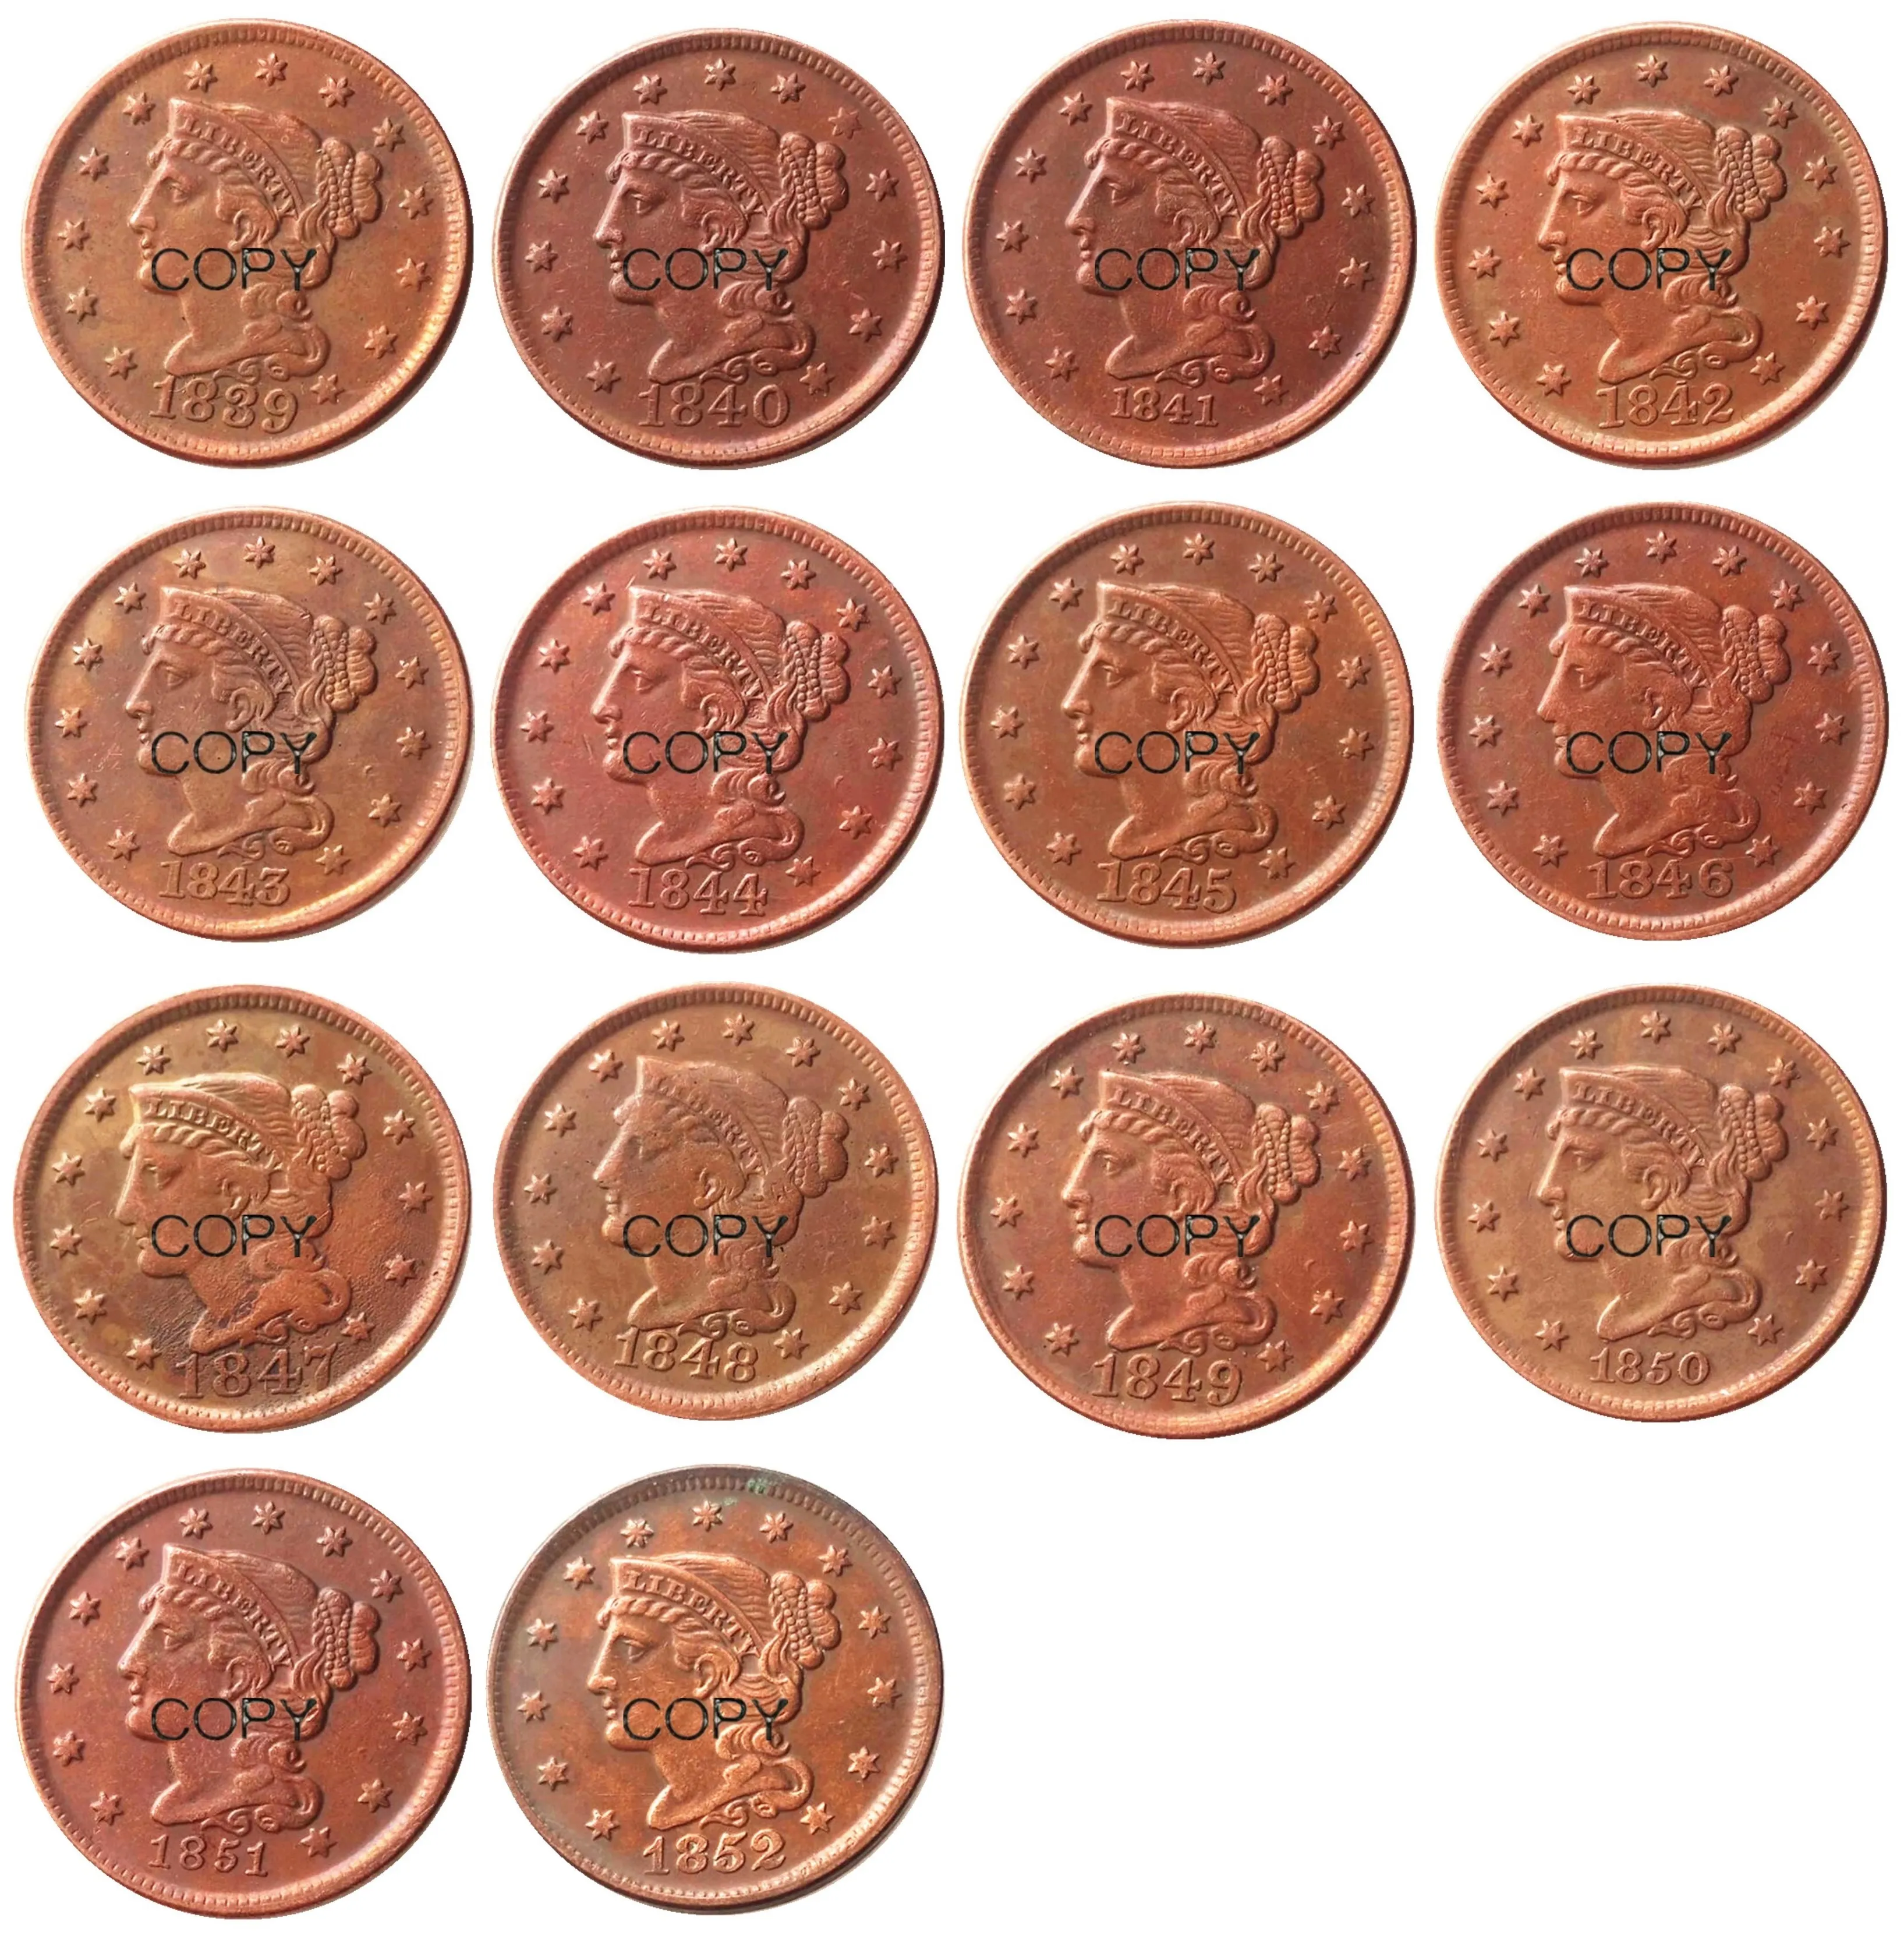 US Coins Full Set 18391852 Différentes dates pour les cheveux tressés choisis 100 Copper Copy Copy COINS4840728